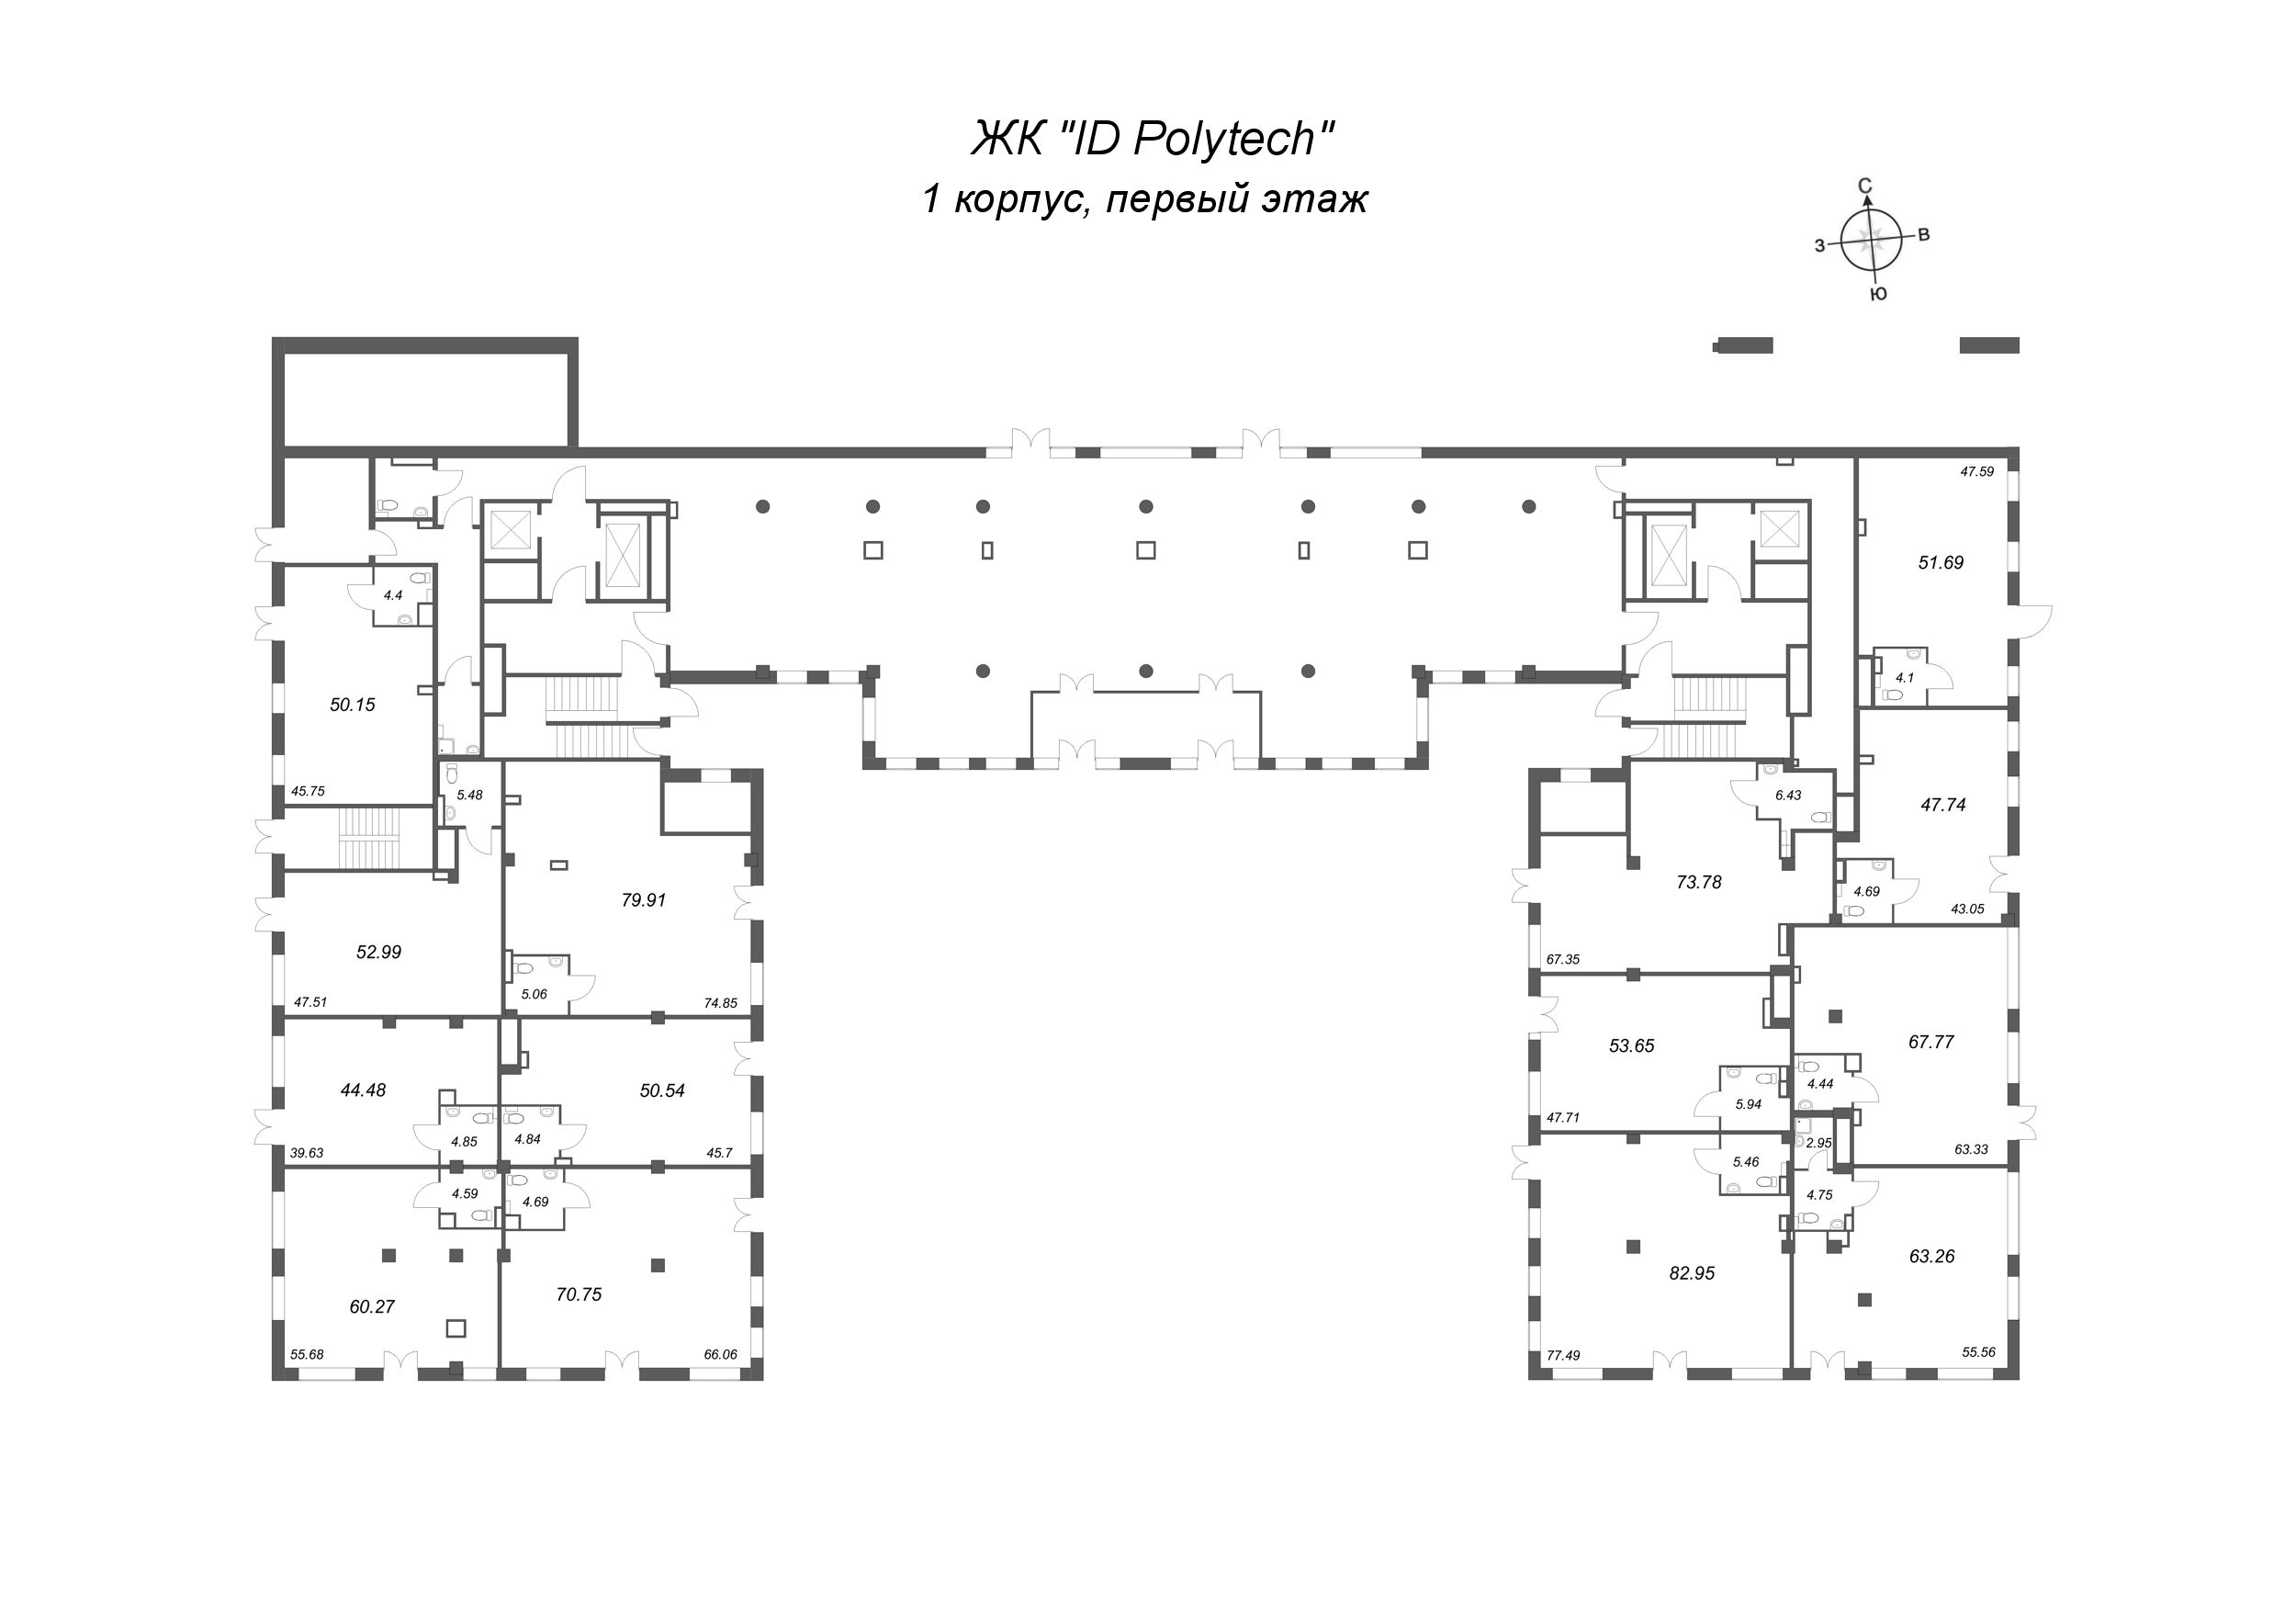 Помещение, 51.69 м² - планировка этажа